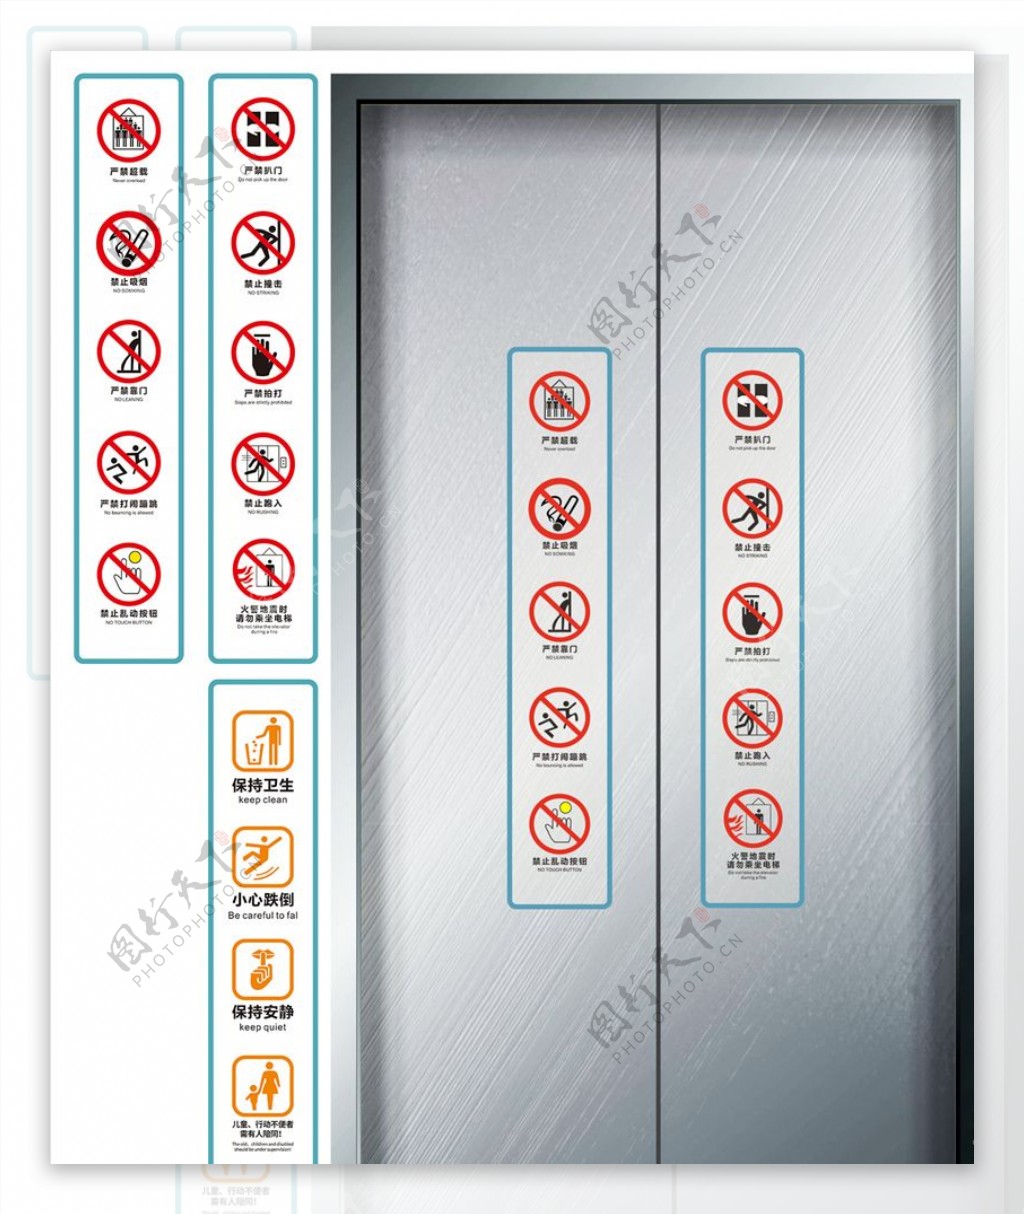 电梯提示标志